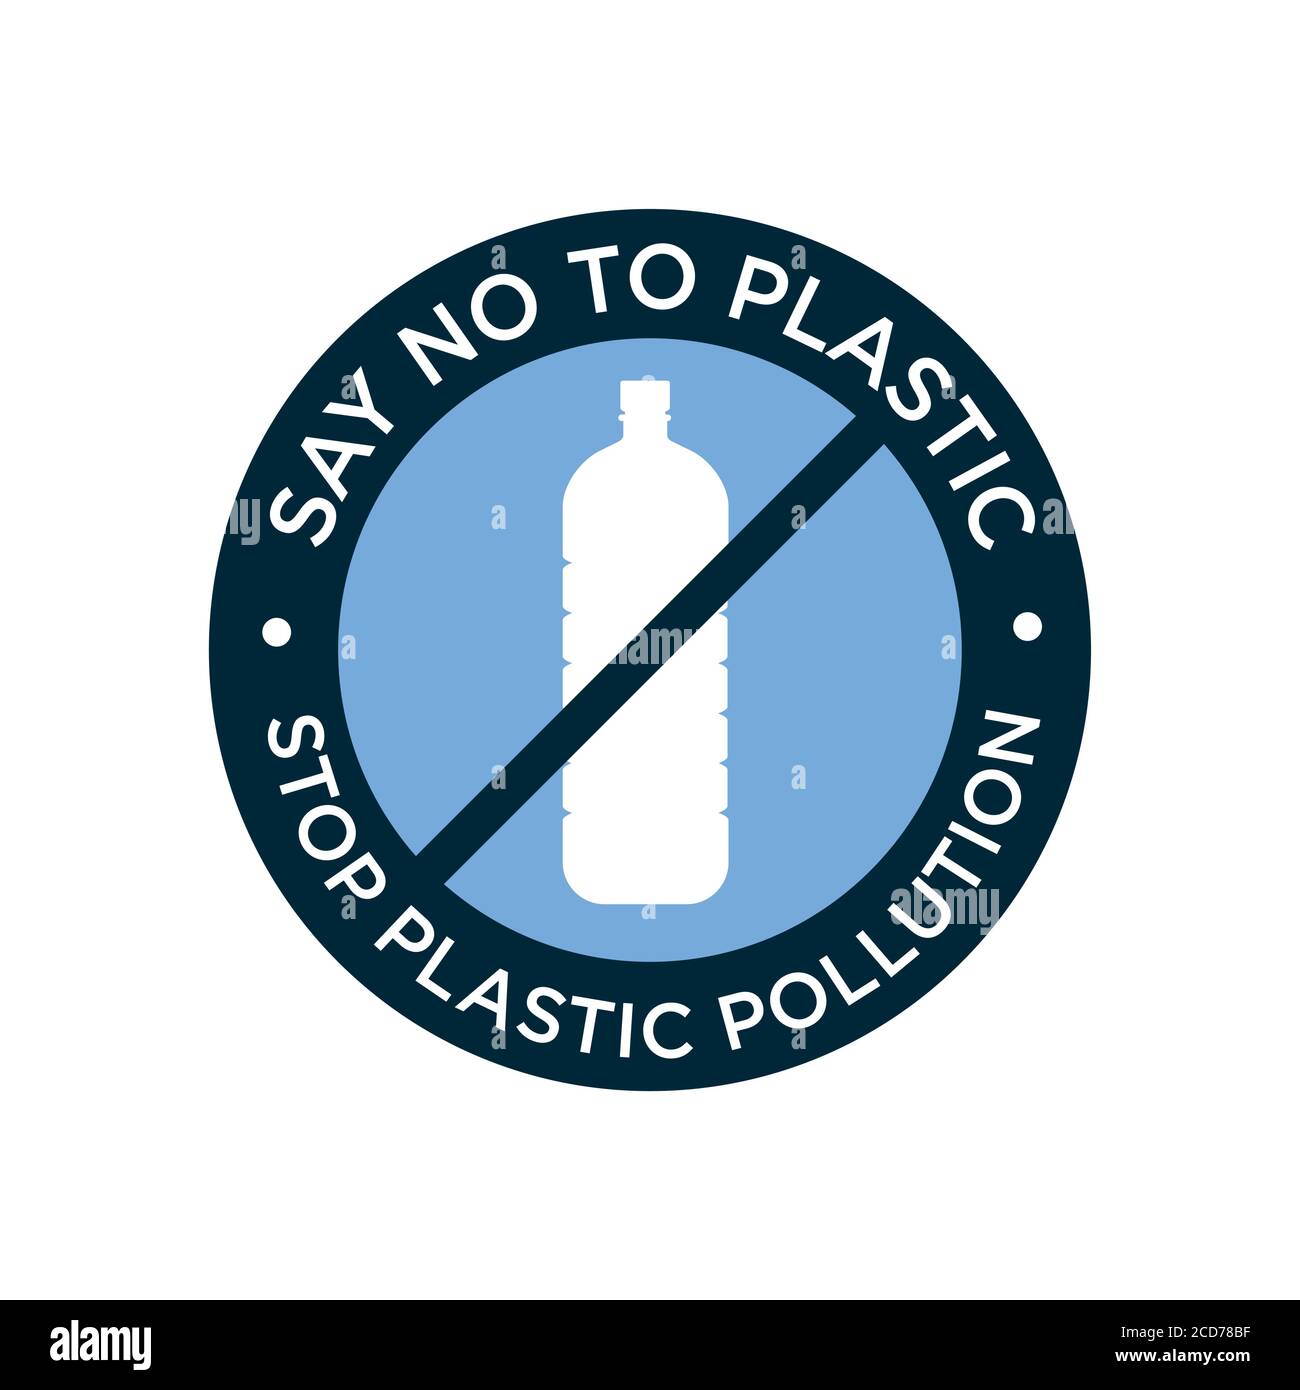 Sagen Sie Nein zum Plastiksymbol. Verhindern Sie die Verschmutzung durch Plastik. Vektorsymbol. Stock Vektor